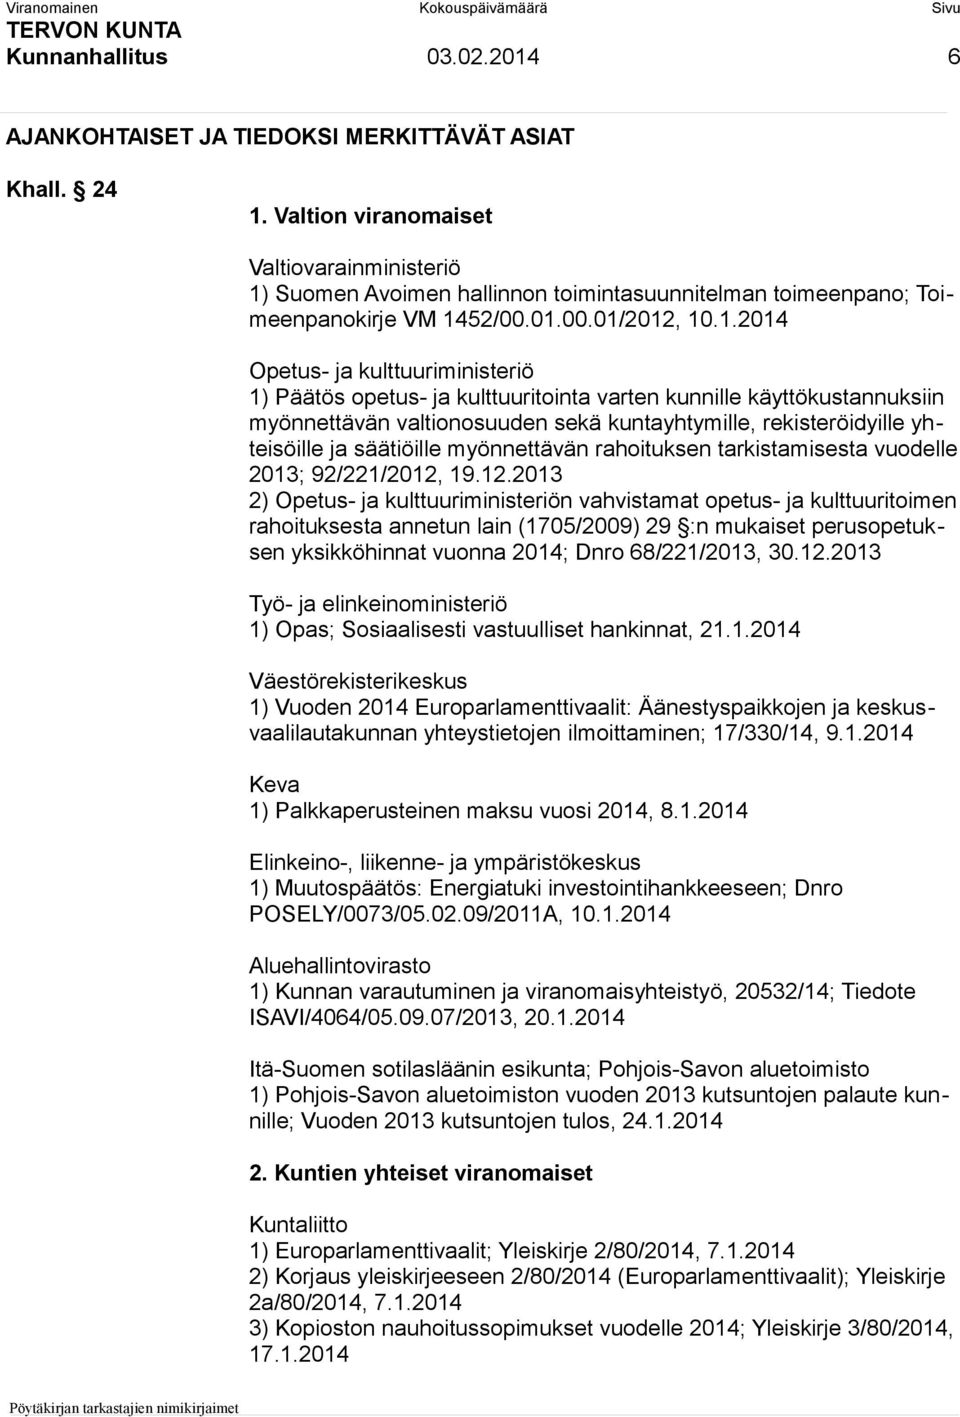 Suomen Avoimen hallinnon toimintasuunnitelman toimeenpano; Toimeenpanokirje VM 14